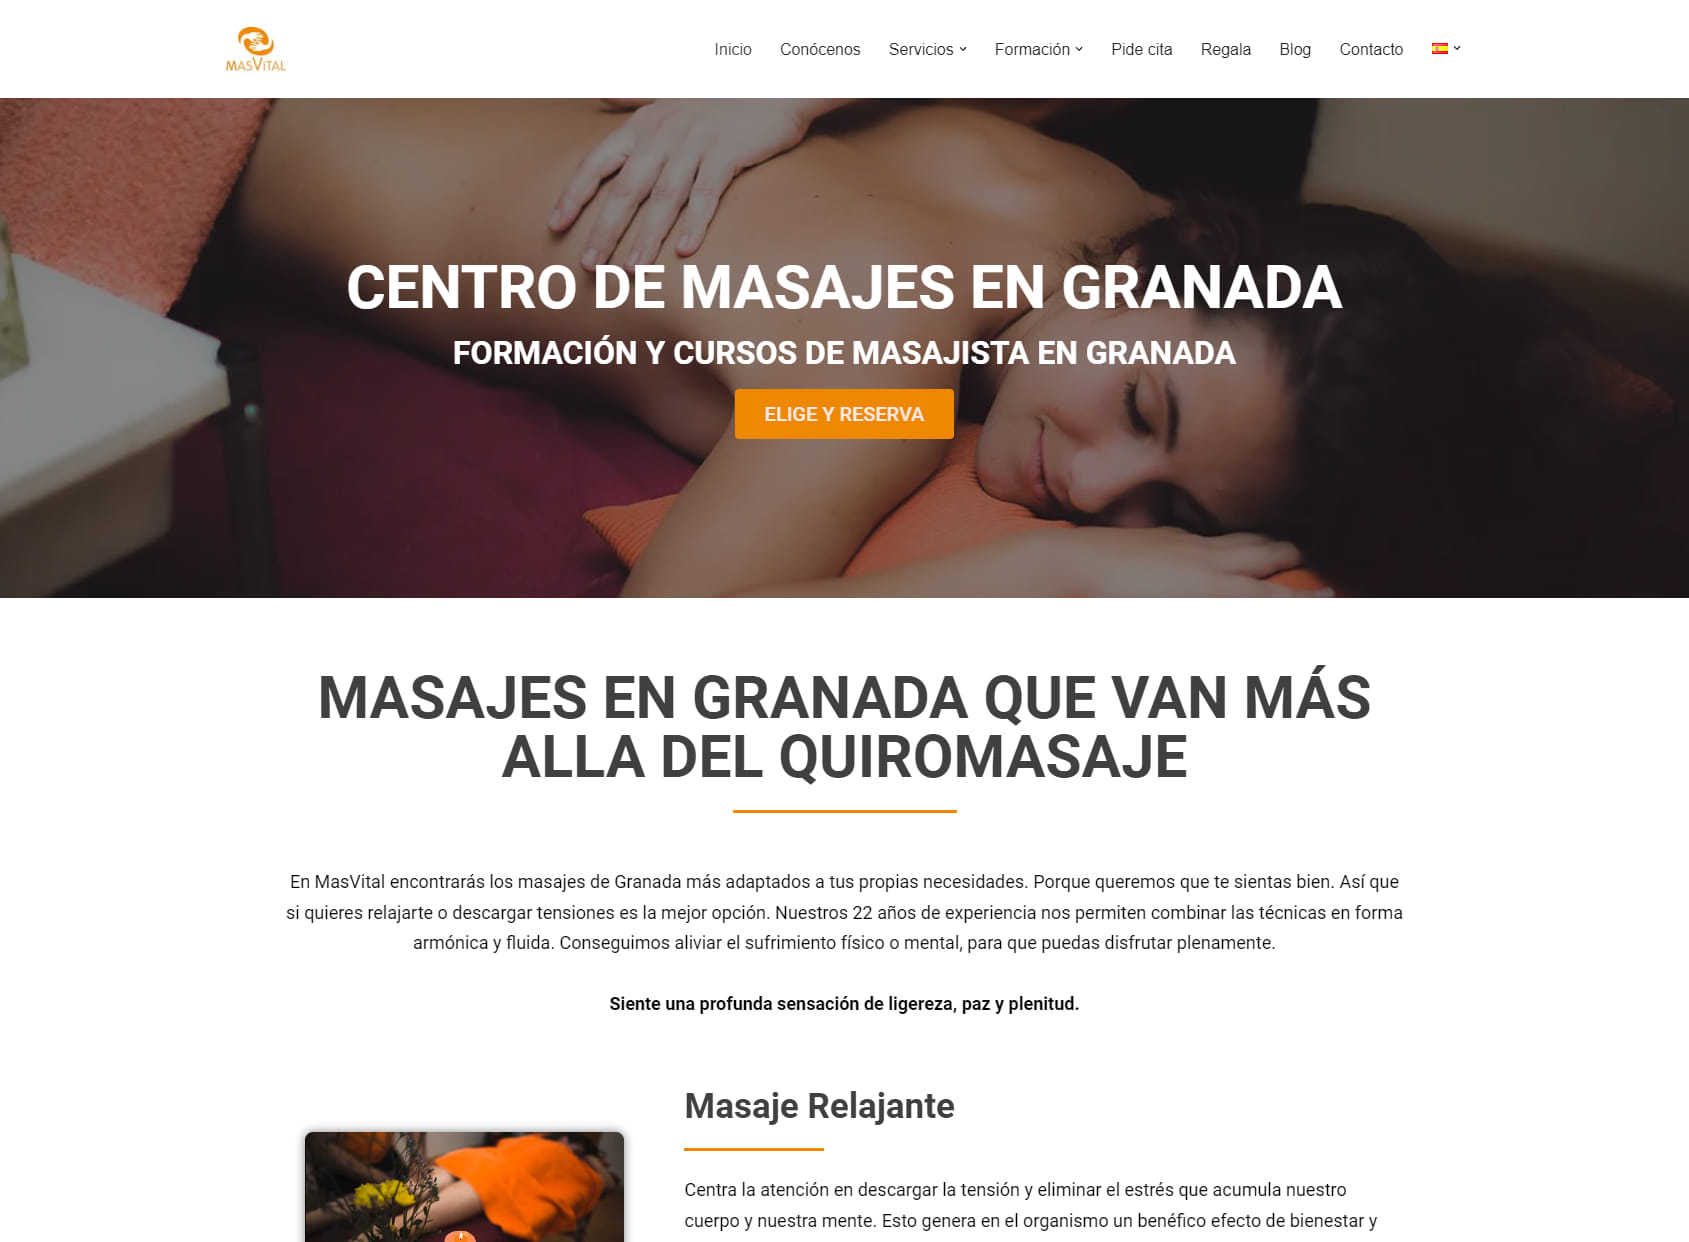 Masvital: Centro de Masajes en Granada